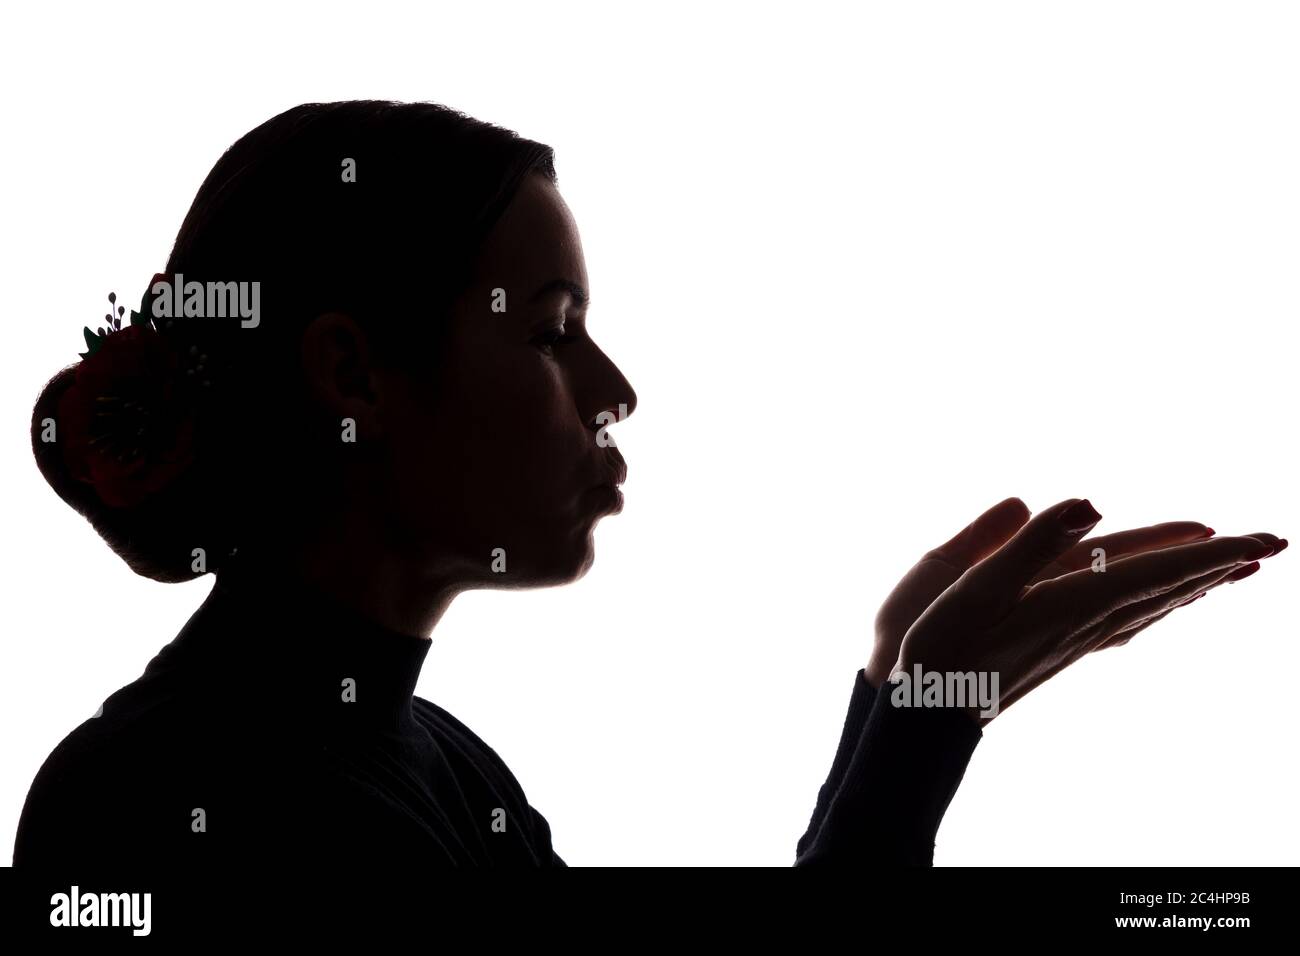 Une jeune femme montre ses mains en avant, envoyant un baiser - silhouette Banque D'Images